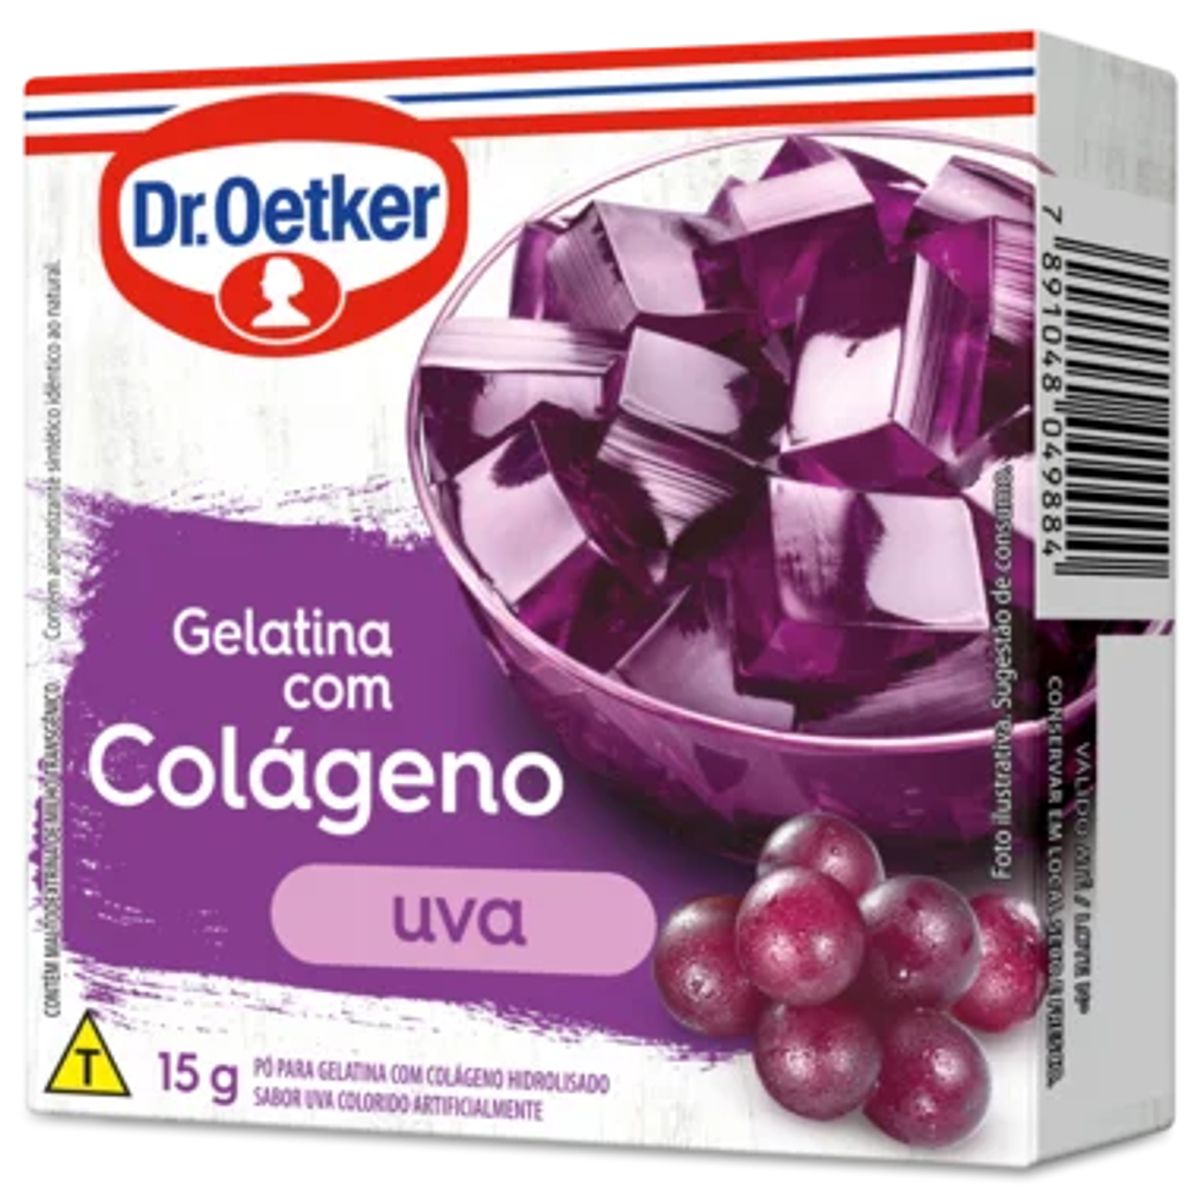 Gelatina Dr.Oetker com Colágeno Sabor Uva 15g